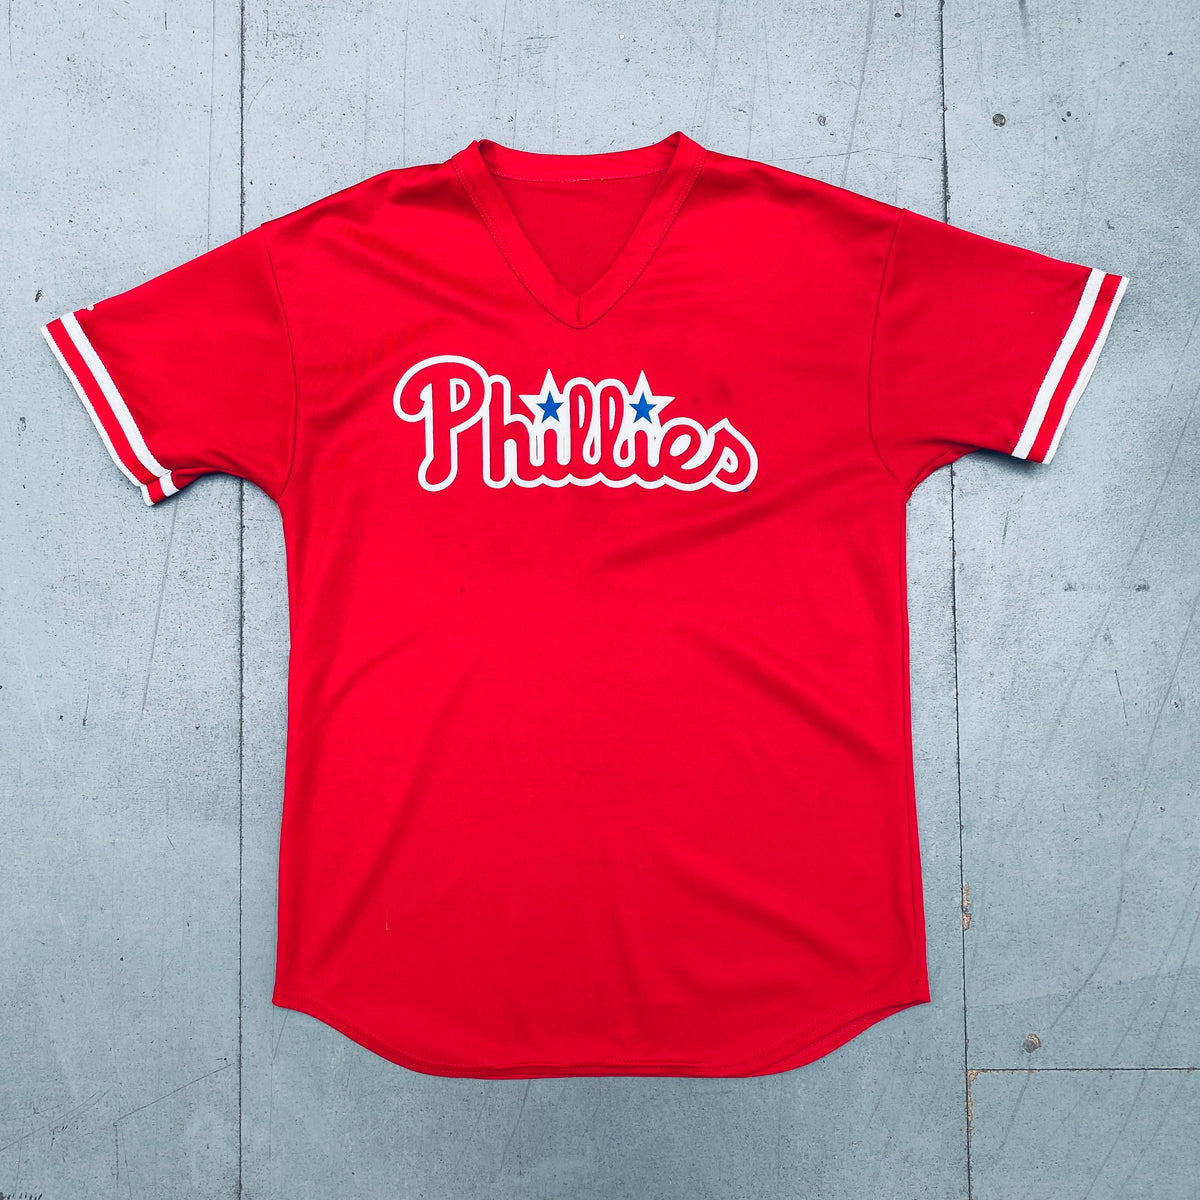 Phillies Majestic Baseball Jersey 